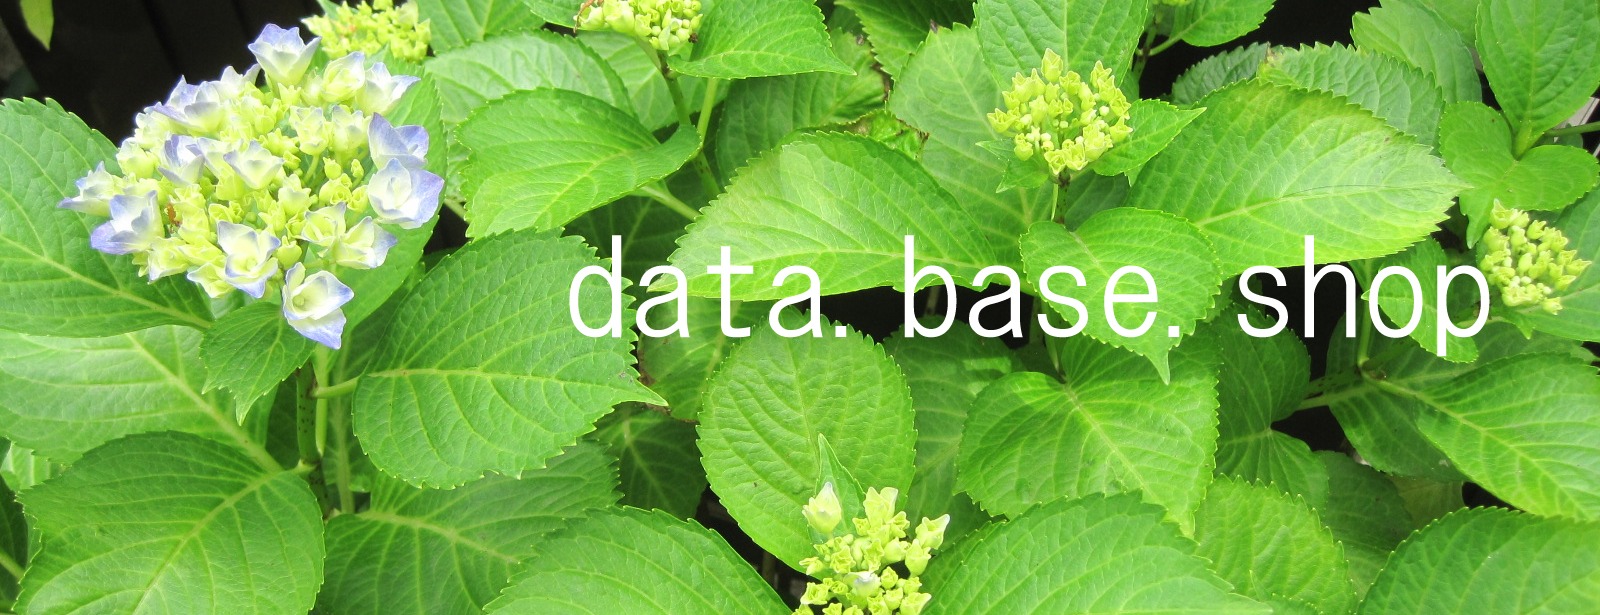 data.base.shop